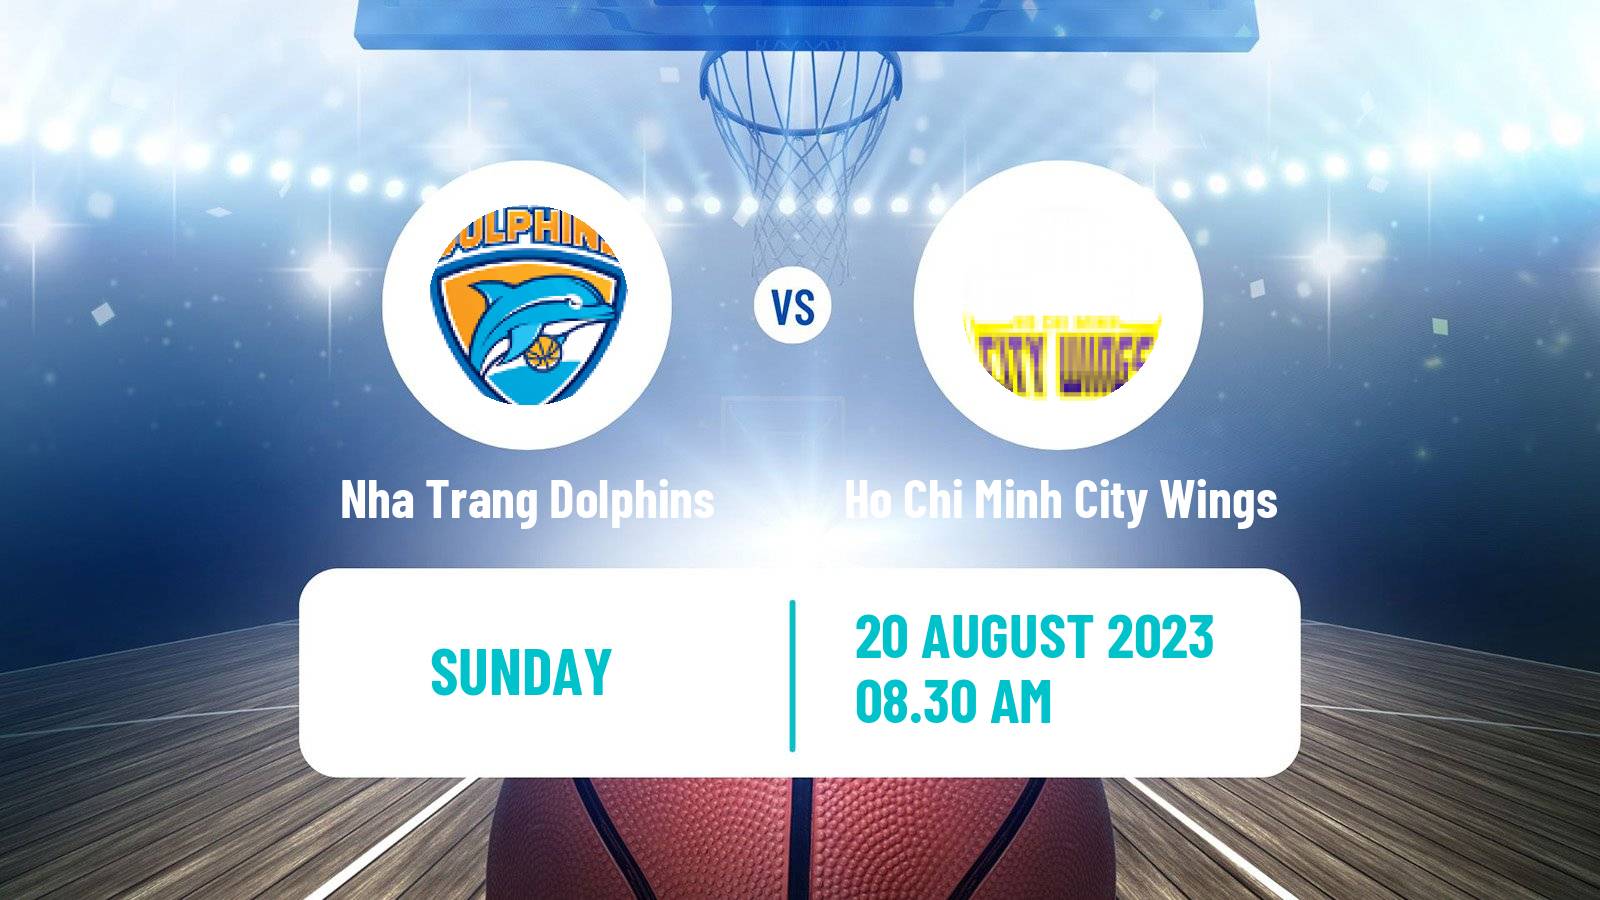 Basketball Vietnamese VBA Nha Trang Dolphins - Ho Chi Minh City Wings